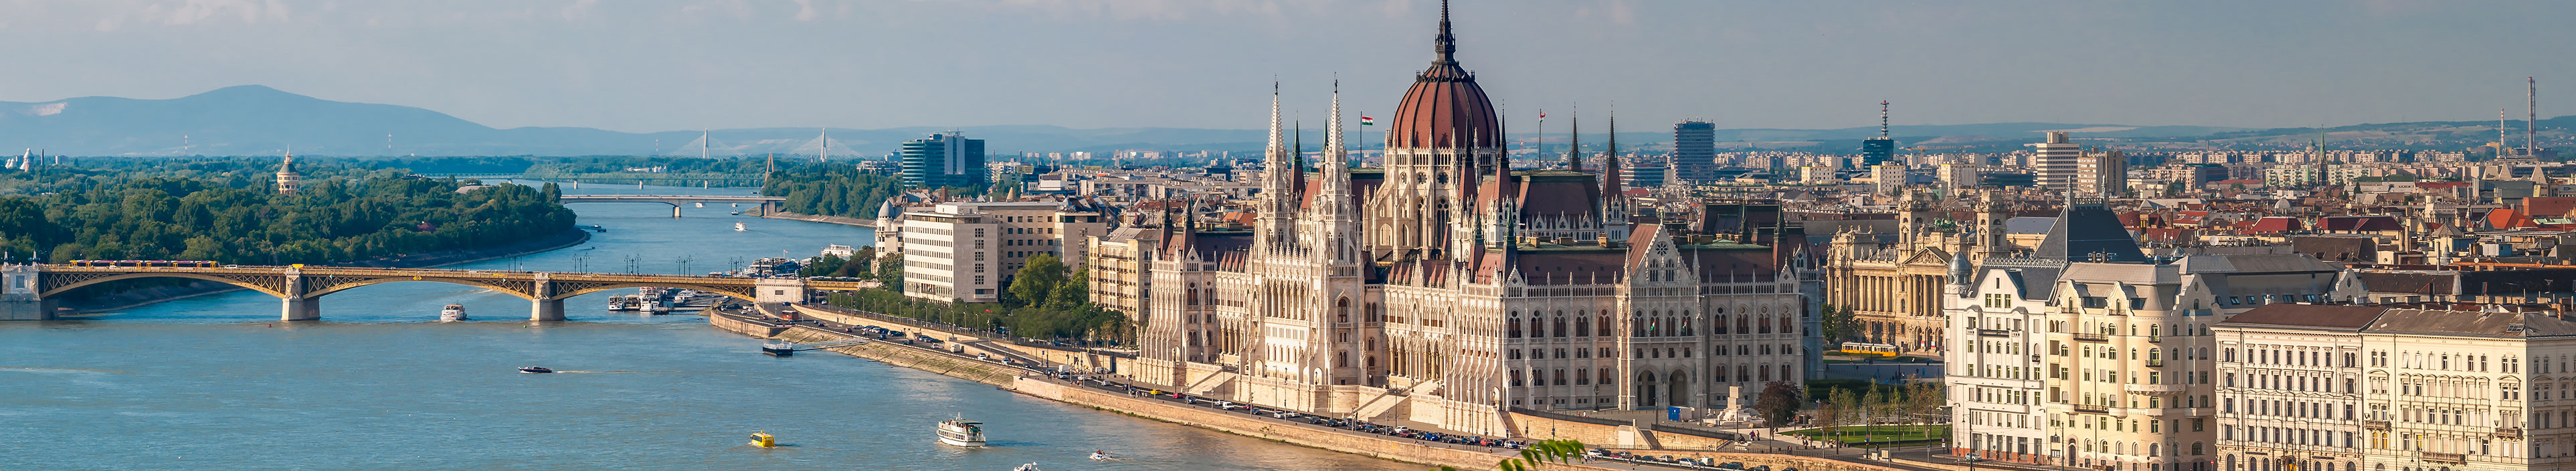 Blick auf das ungarische Parlament in Budapest